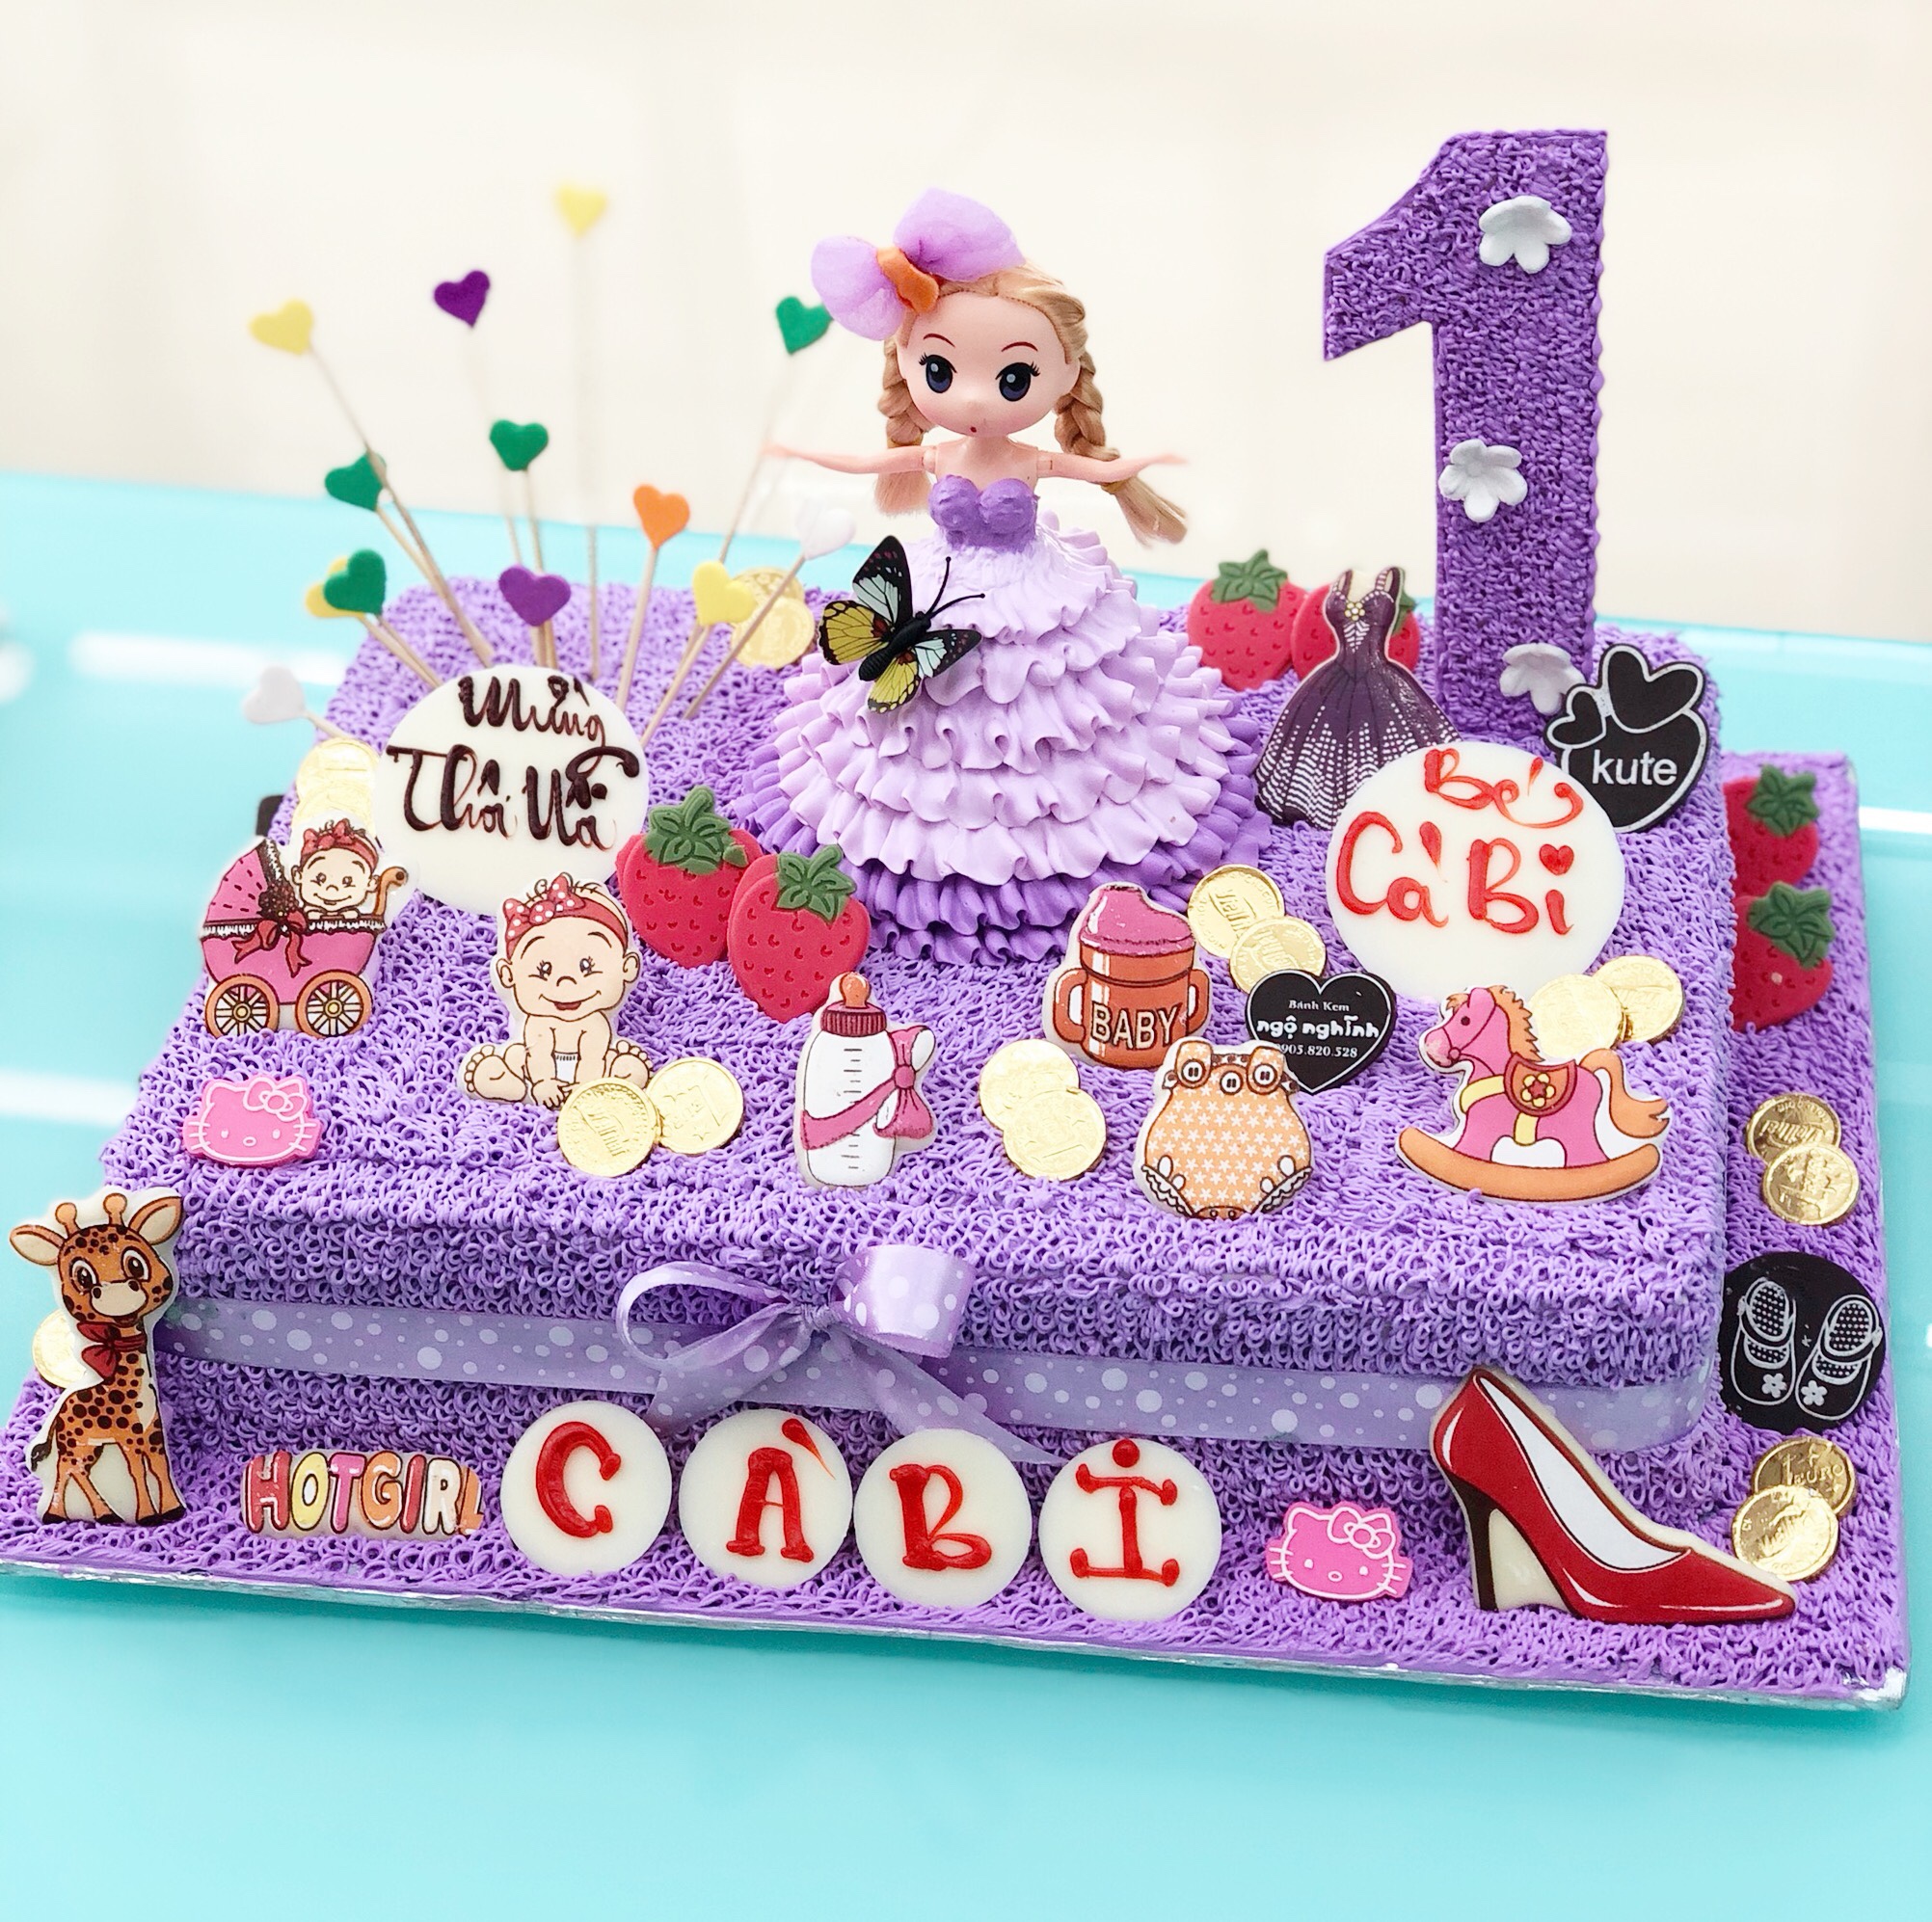 Hãy chuẩn bị sẵn sàng cho một bữa tiệc sinh nhật đầy màu sắc với chiếc bánh sinh nhật công chúa chibi tím này. Với những màu sắc hồng tím đặc trưng của công chúa, chiếc bánh này sẽ khiến cho bữa tiệc của bạn đầy ấn tượng và đáng yêu. Hãy mua ngay chiếc bánh này và thưởng thức món tráng miệng ngon miệng.